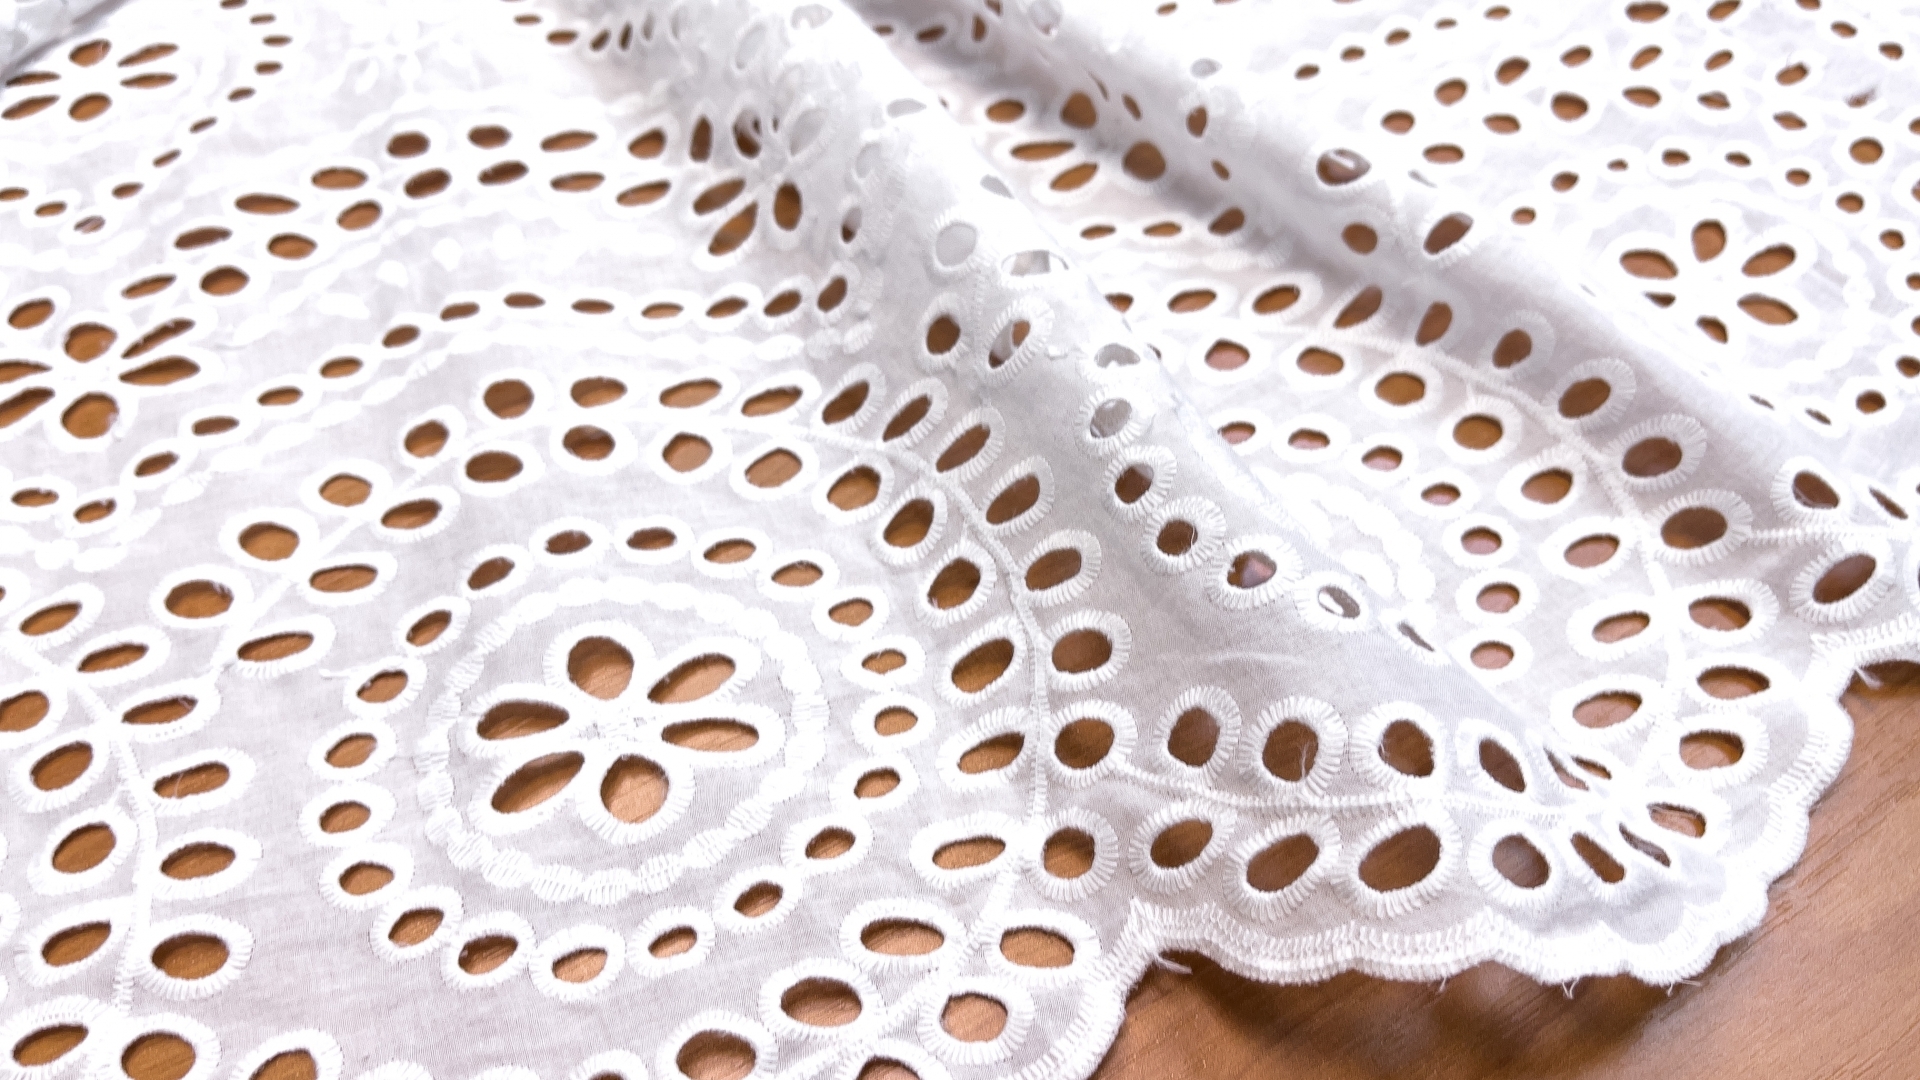 Роскошное шитье белого цвета, дизайн как у коллекционных полотен. Качественная вышивка, обе кромки одинаковые, идеальное завершение низа изделия.